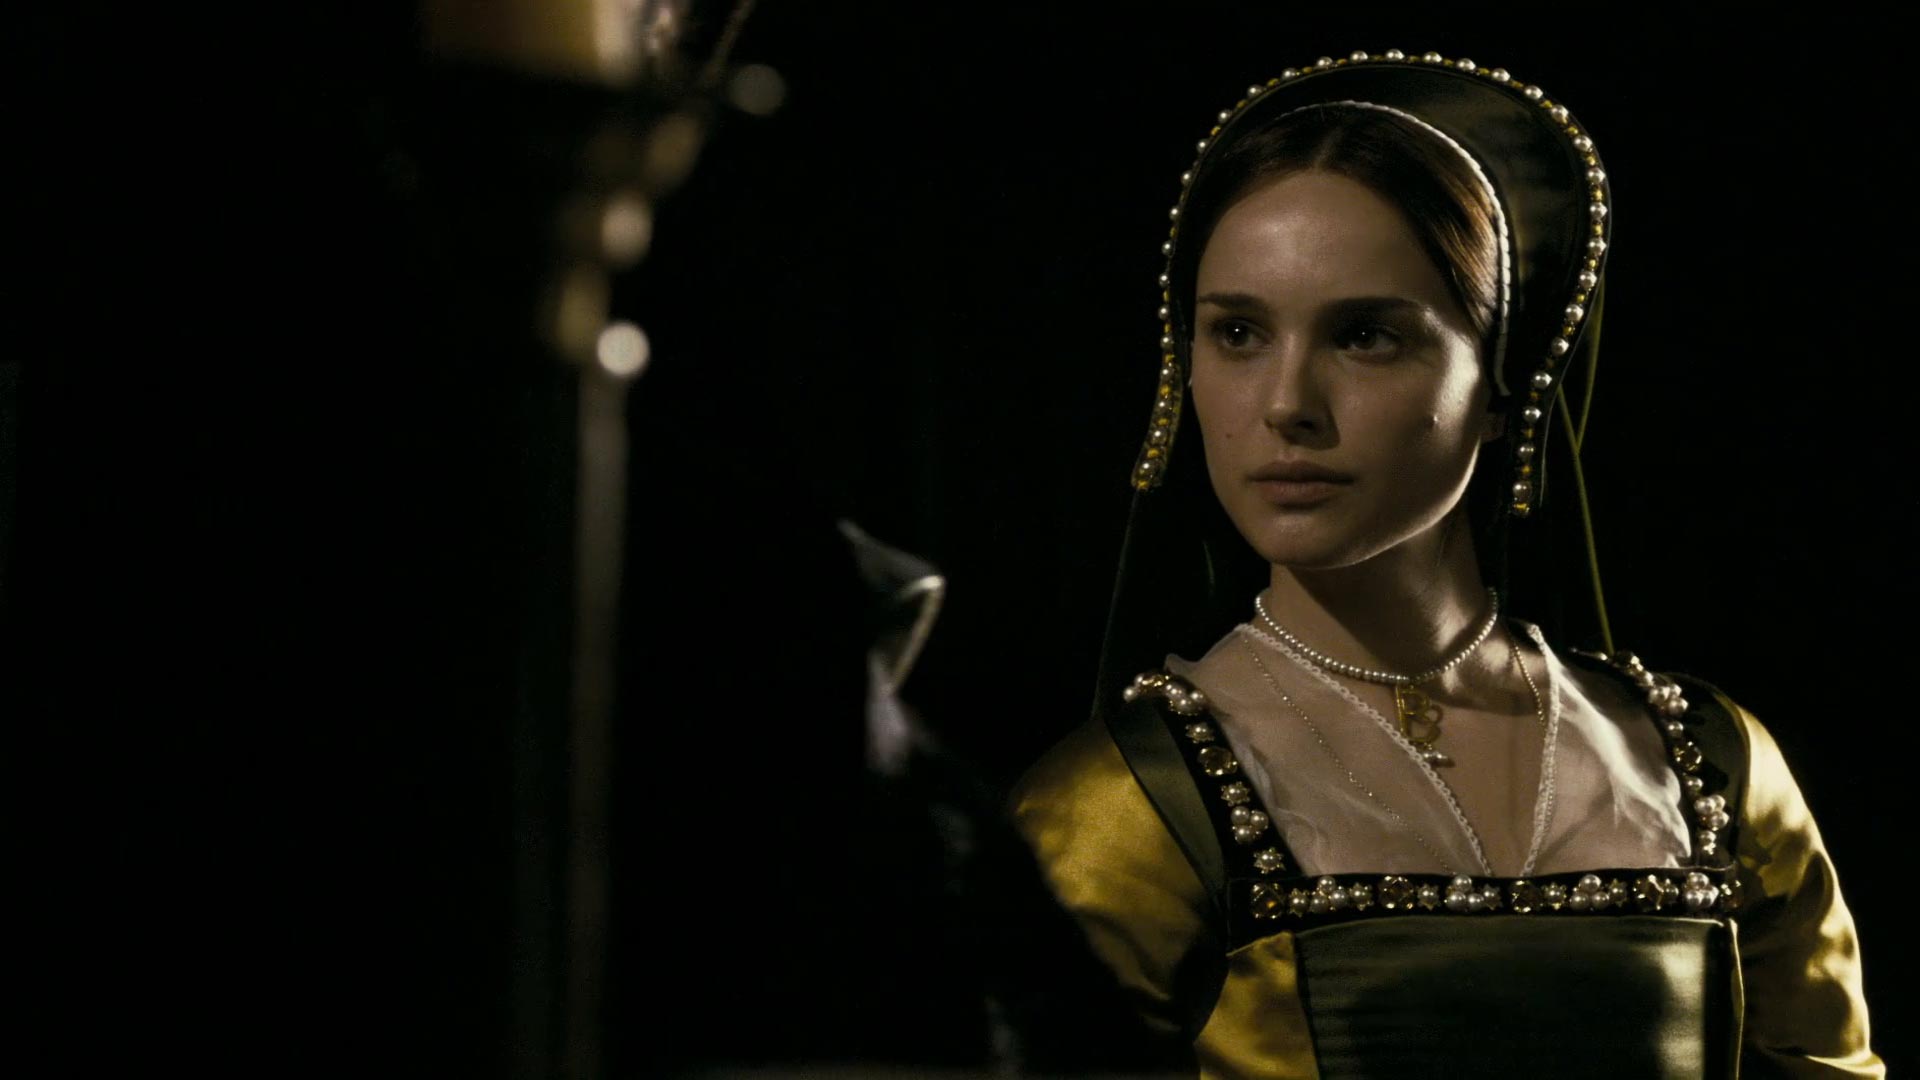 ناتالی پورتمن در لباس قدیمی زنان دوران پادشاهی انگلستان در فیلم دختر دیگر بولین در نقش آن بولین